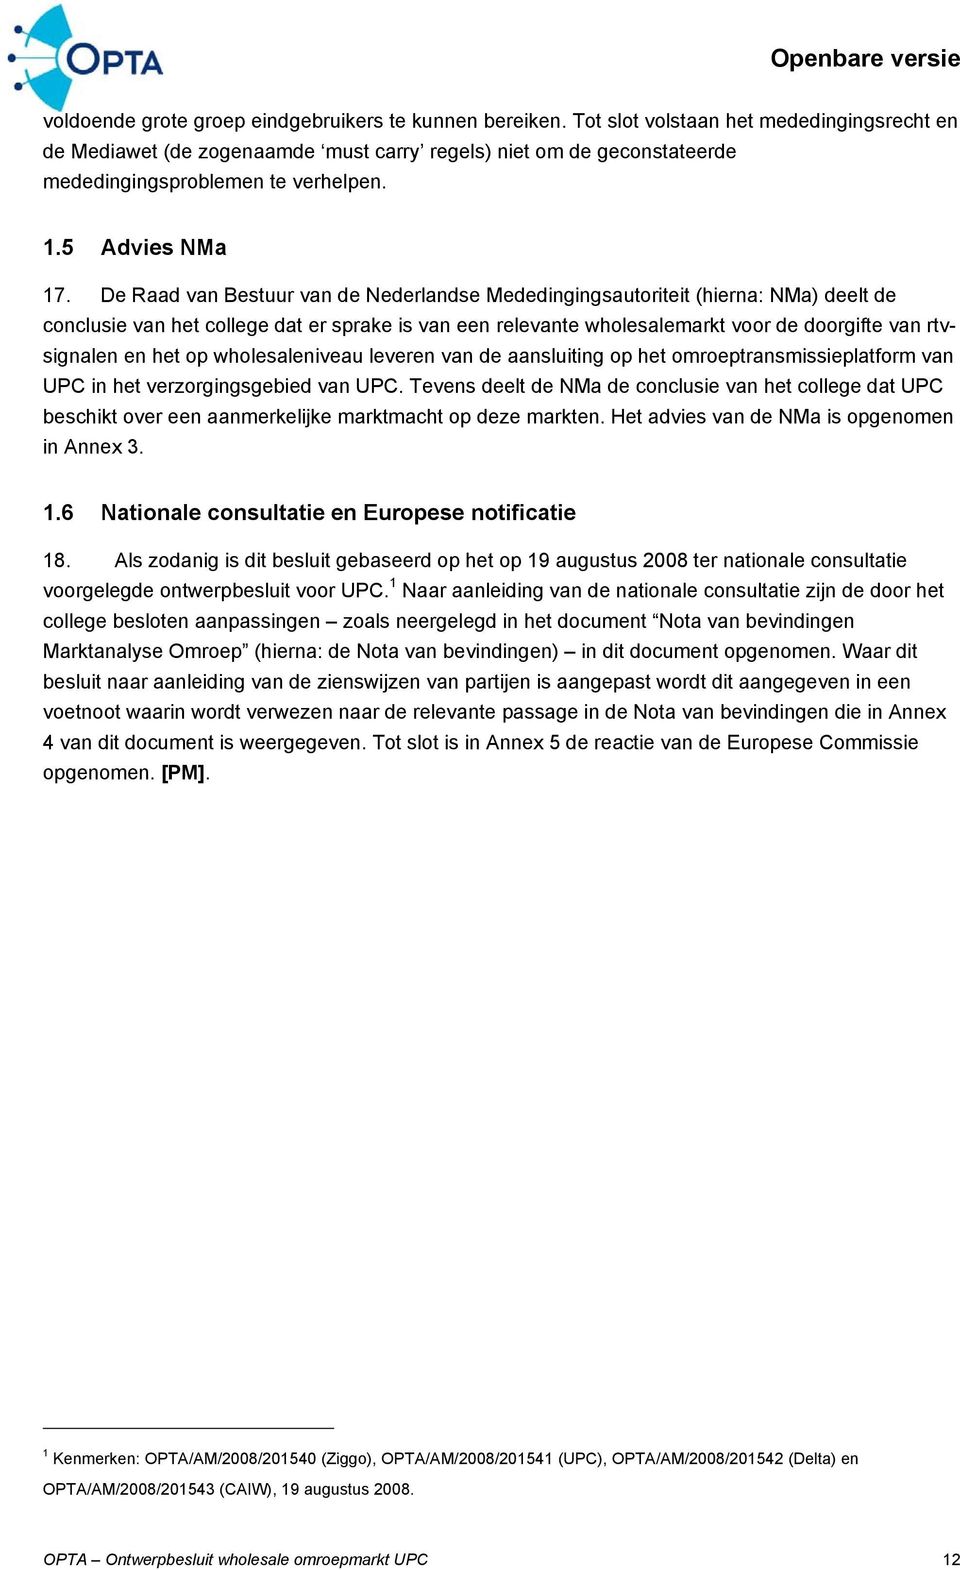 De Raad van Bestuur van de Nederlandse Mededingingsautoriteit (hierna: NMa) deelt de conclusie van het college dat er sprake is van een relevante wholesalemarkt voor de doorgifte van rtvsignalen en